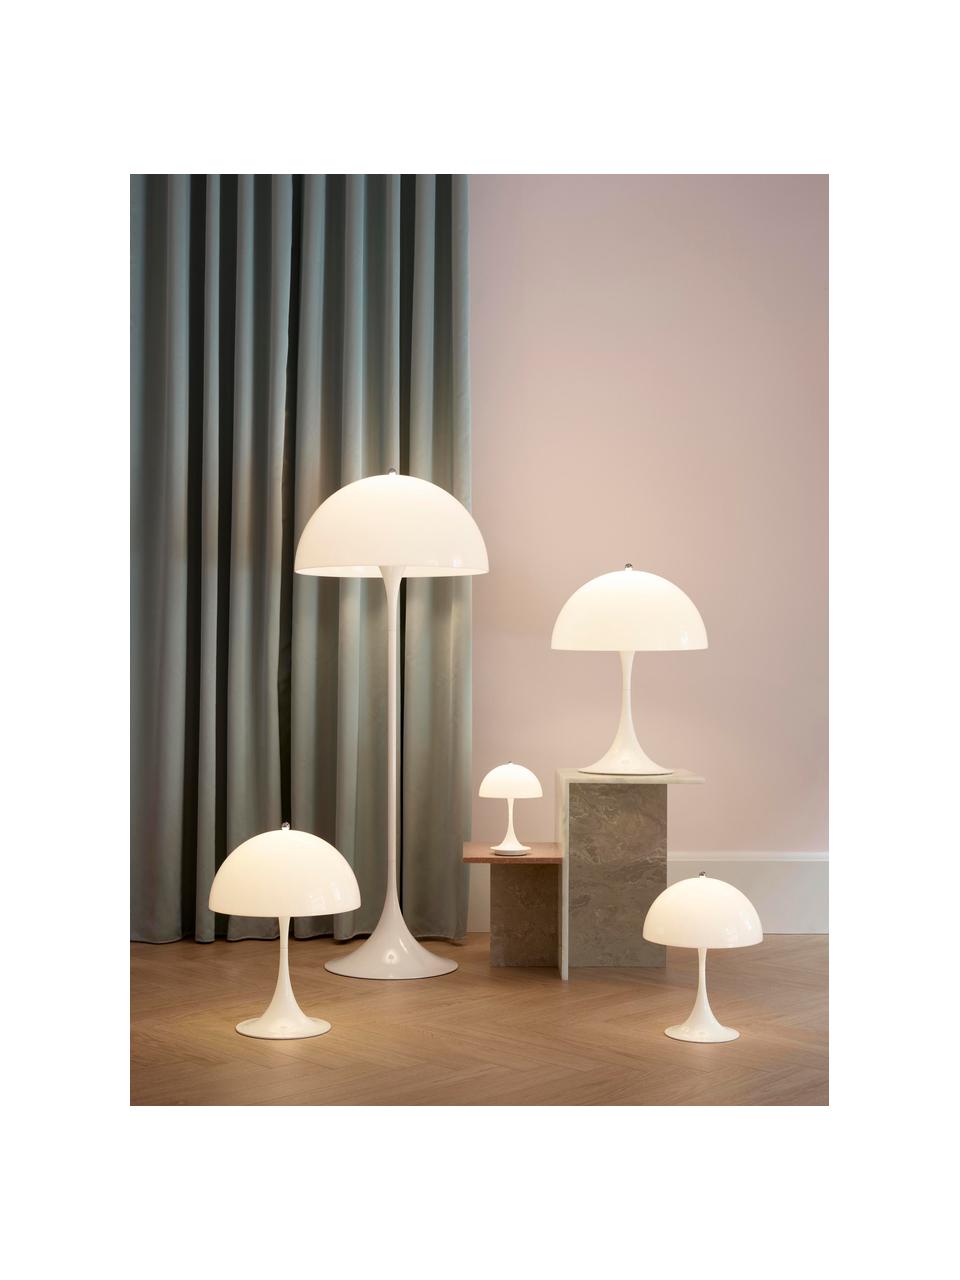 Lampa stołowa Panthella, W 55 cm, Białe szkło akrylowe, Ø 40 x 55 cm